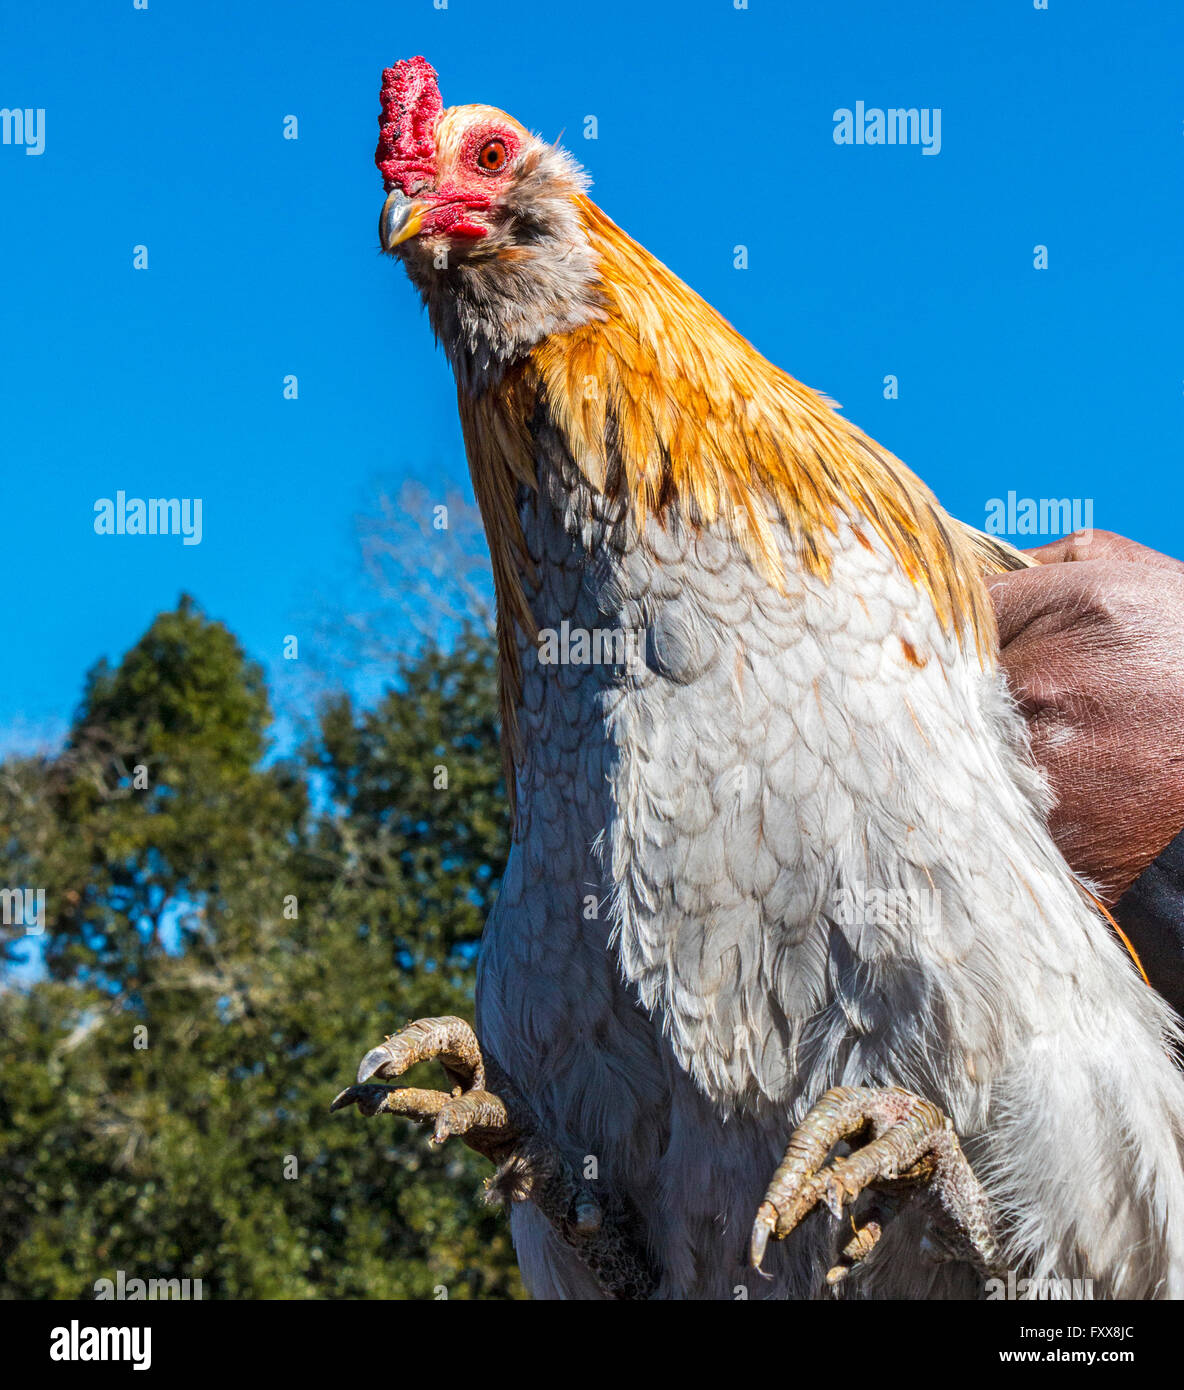 Rodney Victorian, Huhn Beschriftung hält man seinen Preis-Hähne für den traditionellen Chicken Run in Iowa, Louisiana Stockfoto